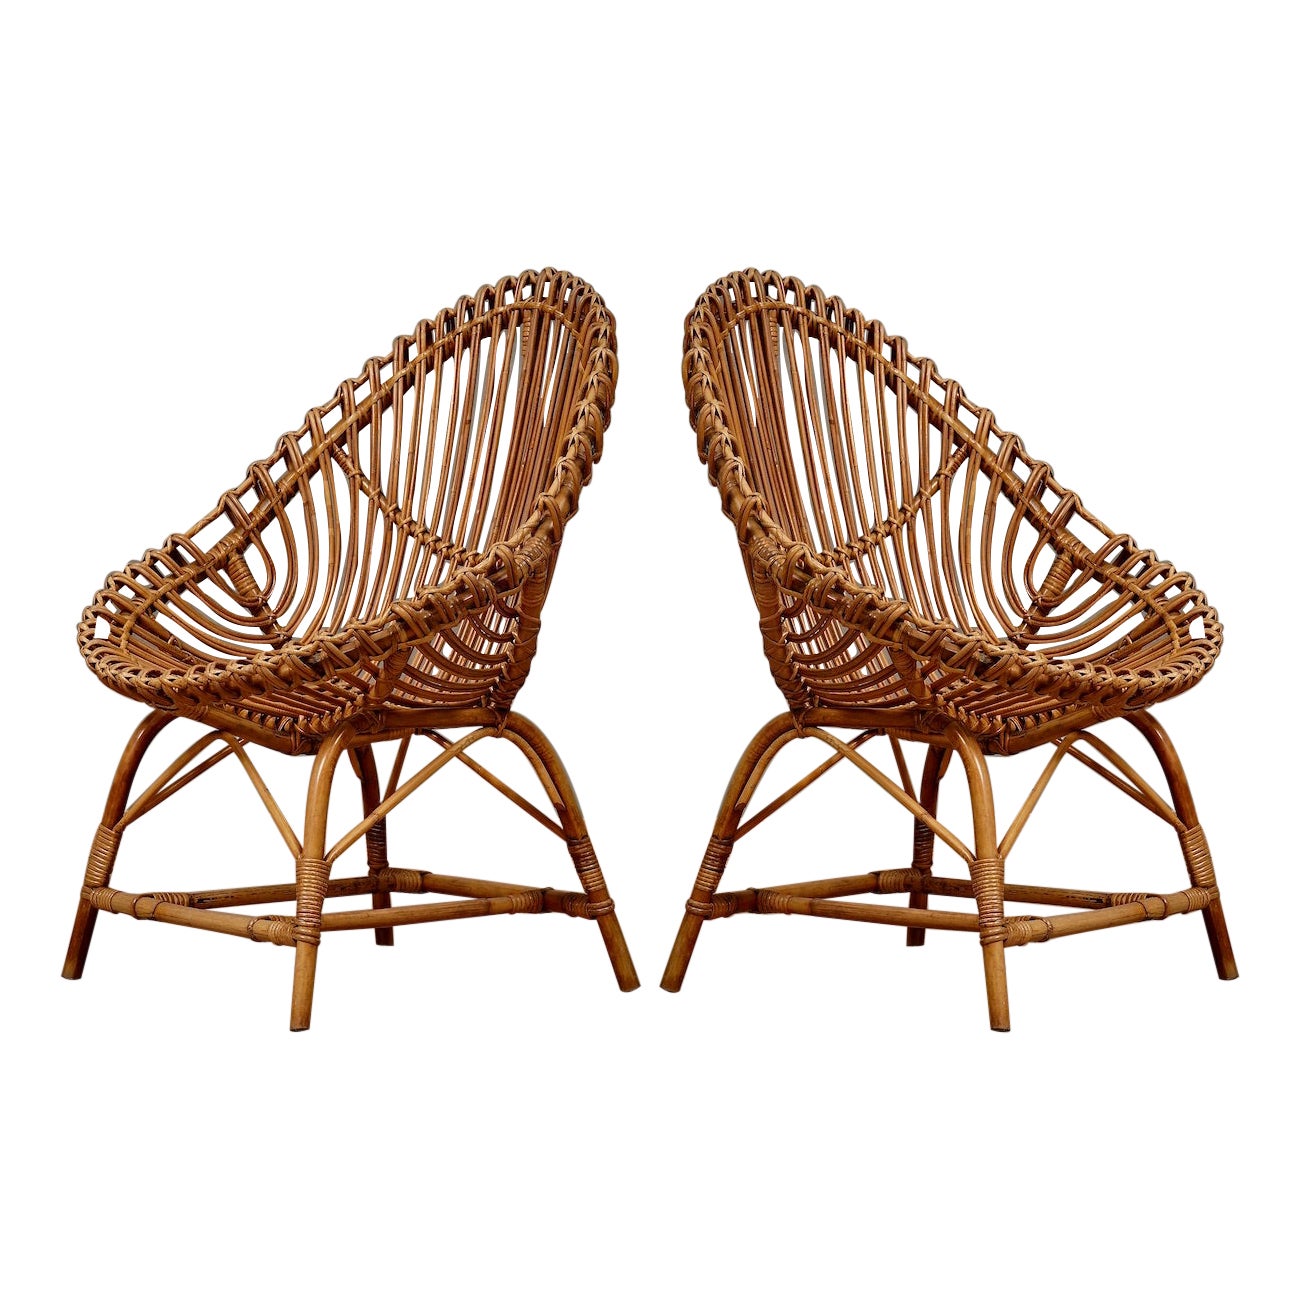 Travasa Giovanni per Bonacina Rattan and Wicker Garden Arm Chair, 1960